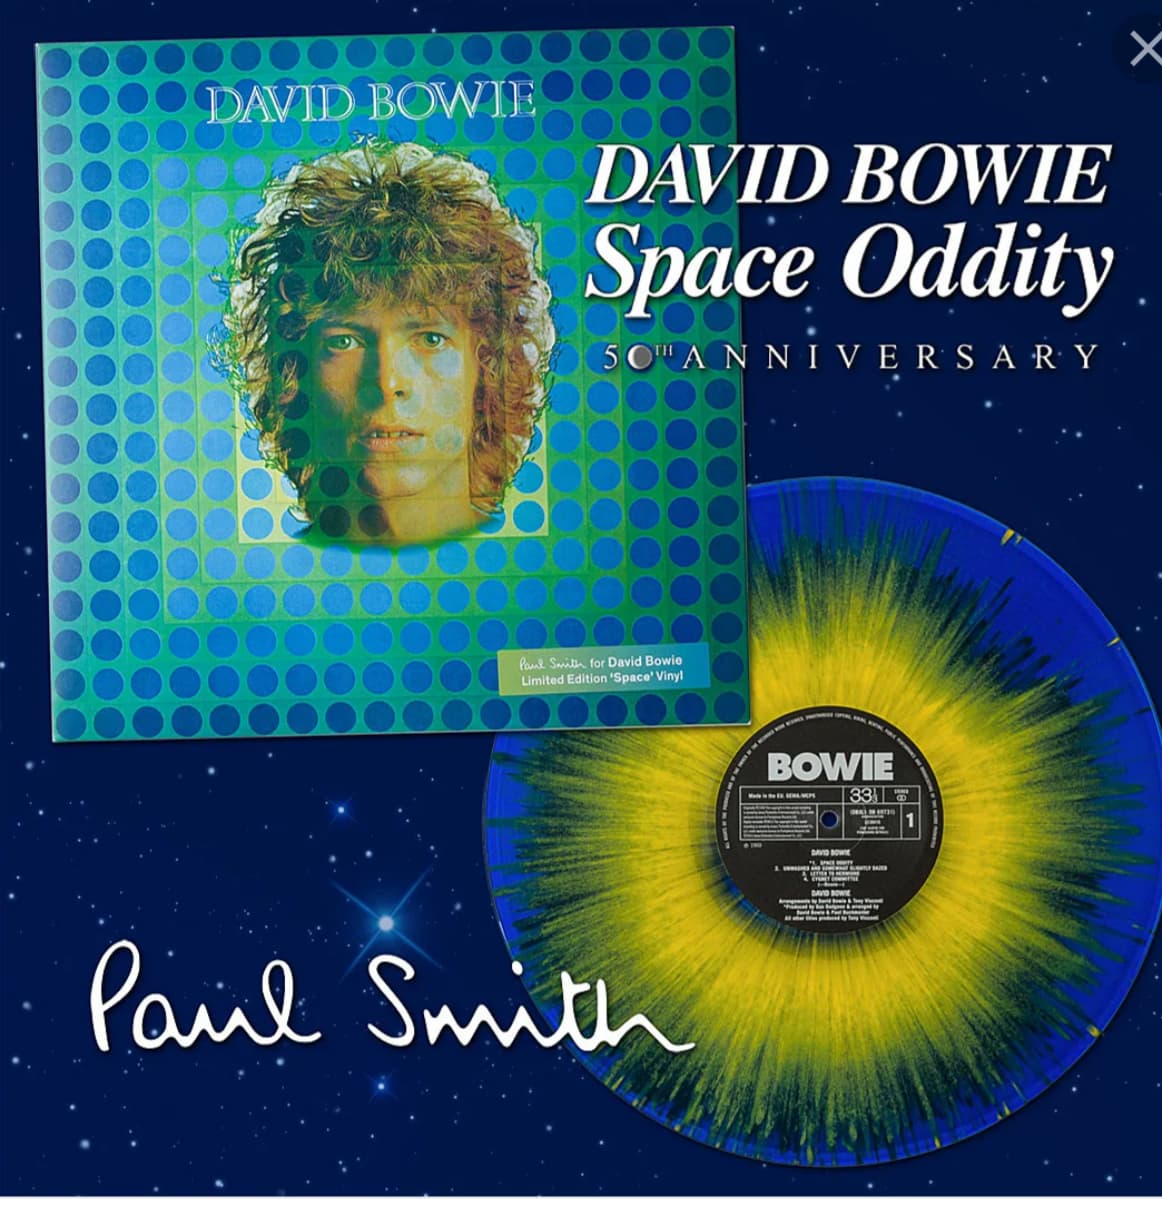 David bowie's space oddity. David Bowie 1969 album. Space Oddity 1969. Space Oddity Дэвид Боуи. David Bowie Space Oddity альбом.